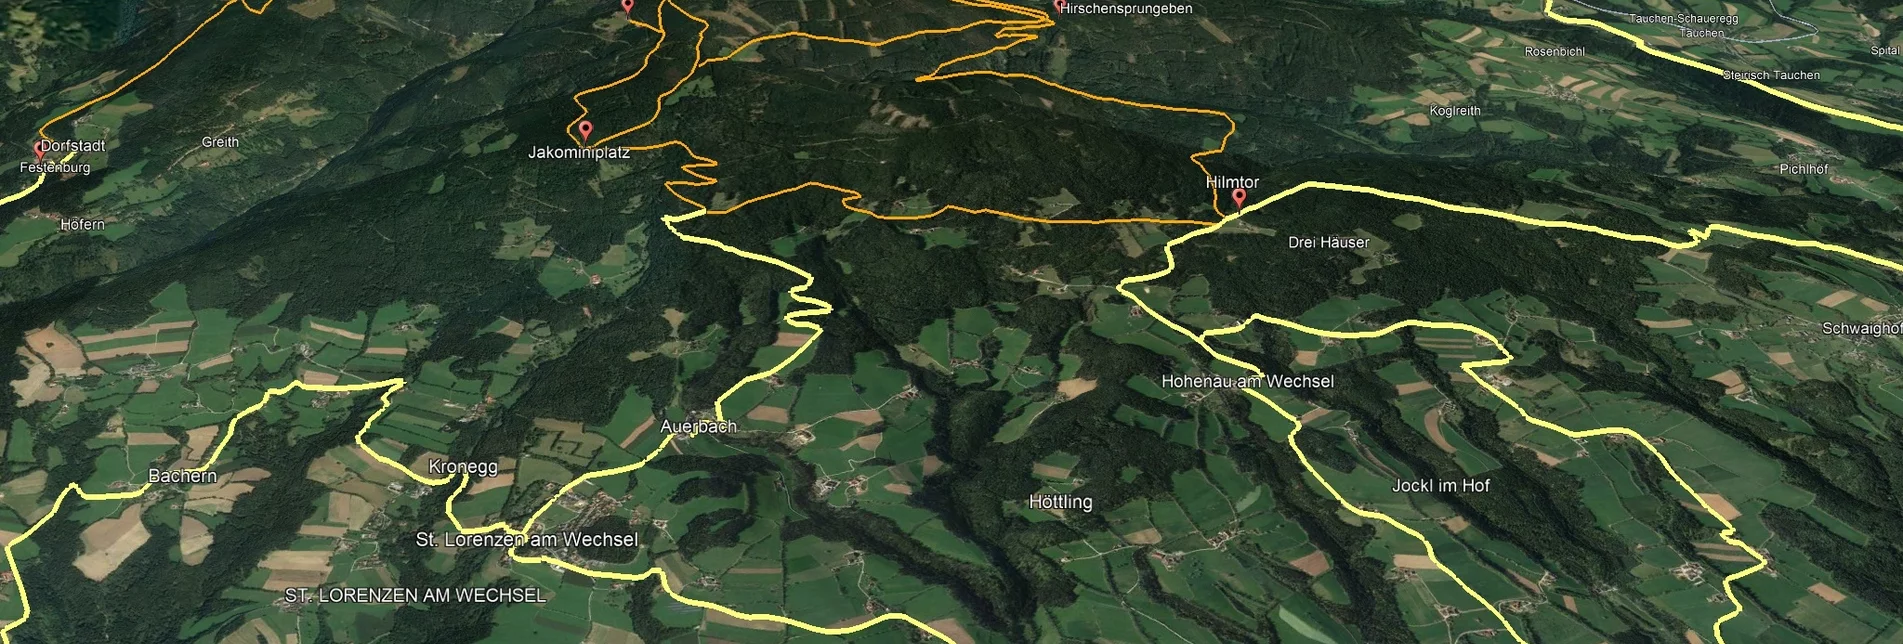 Mountain Biking PREVIEW Styrian Wexl Trails - feeder road Pinggau to Tränktörl - Touren-Impression #1 | © Verein Tourismusentwicklung Steirischer Wechsel